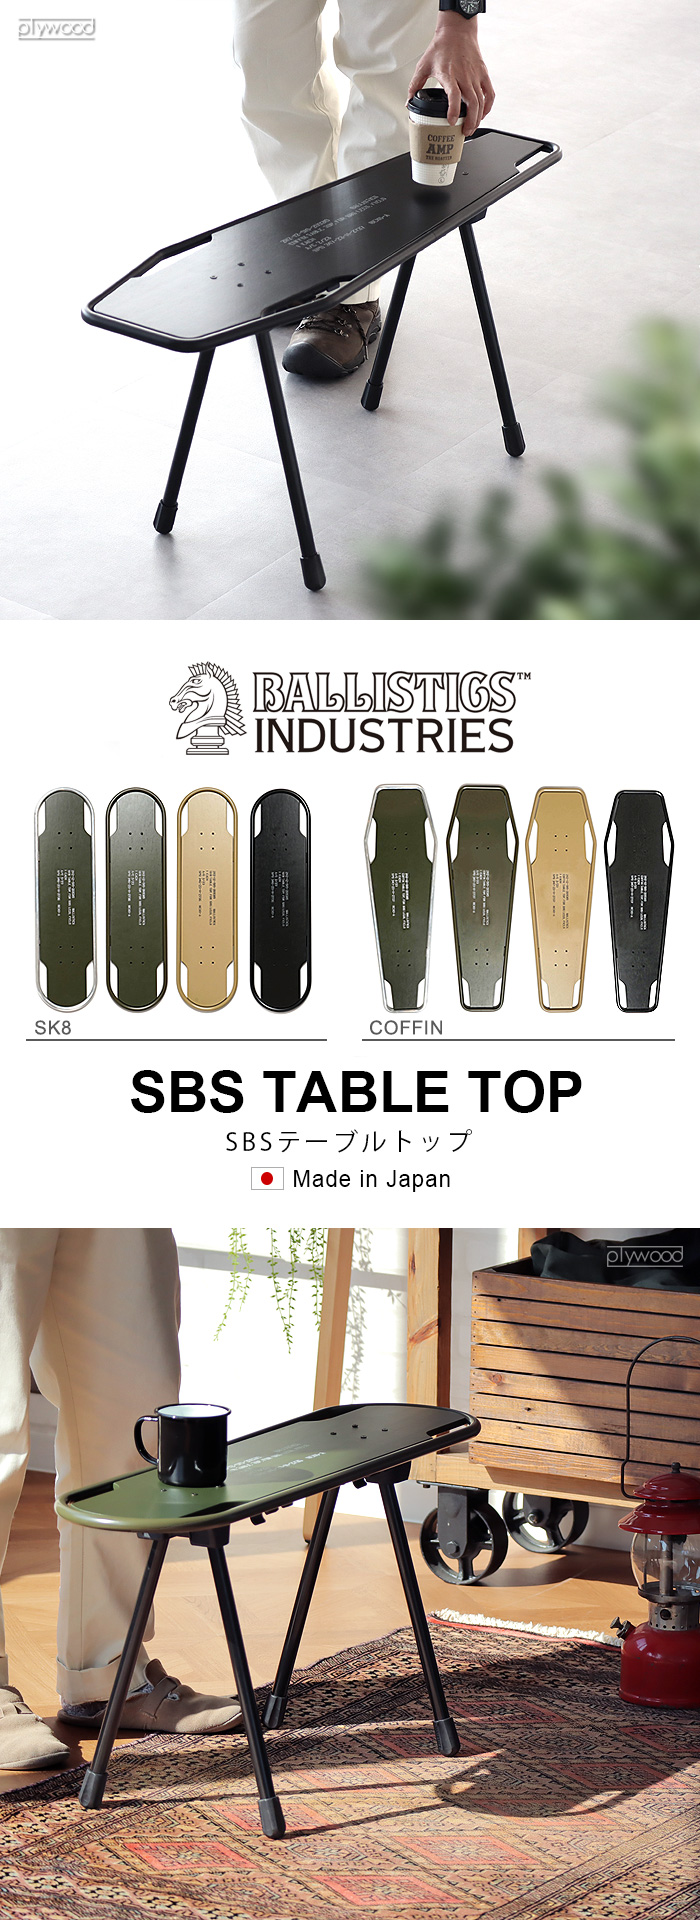 スツール テーブル 椅子 机 バリスティクス SBS KIT用 天板 スケートボード型 BALLISTICS SBS TABLE TOP SK8  シルバー×OD BAA-2309 [脚別売り]